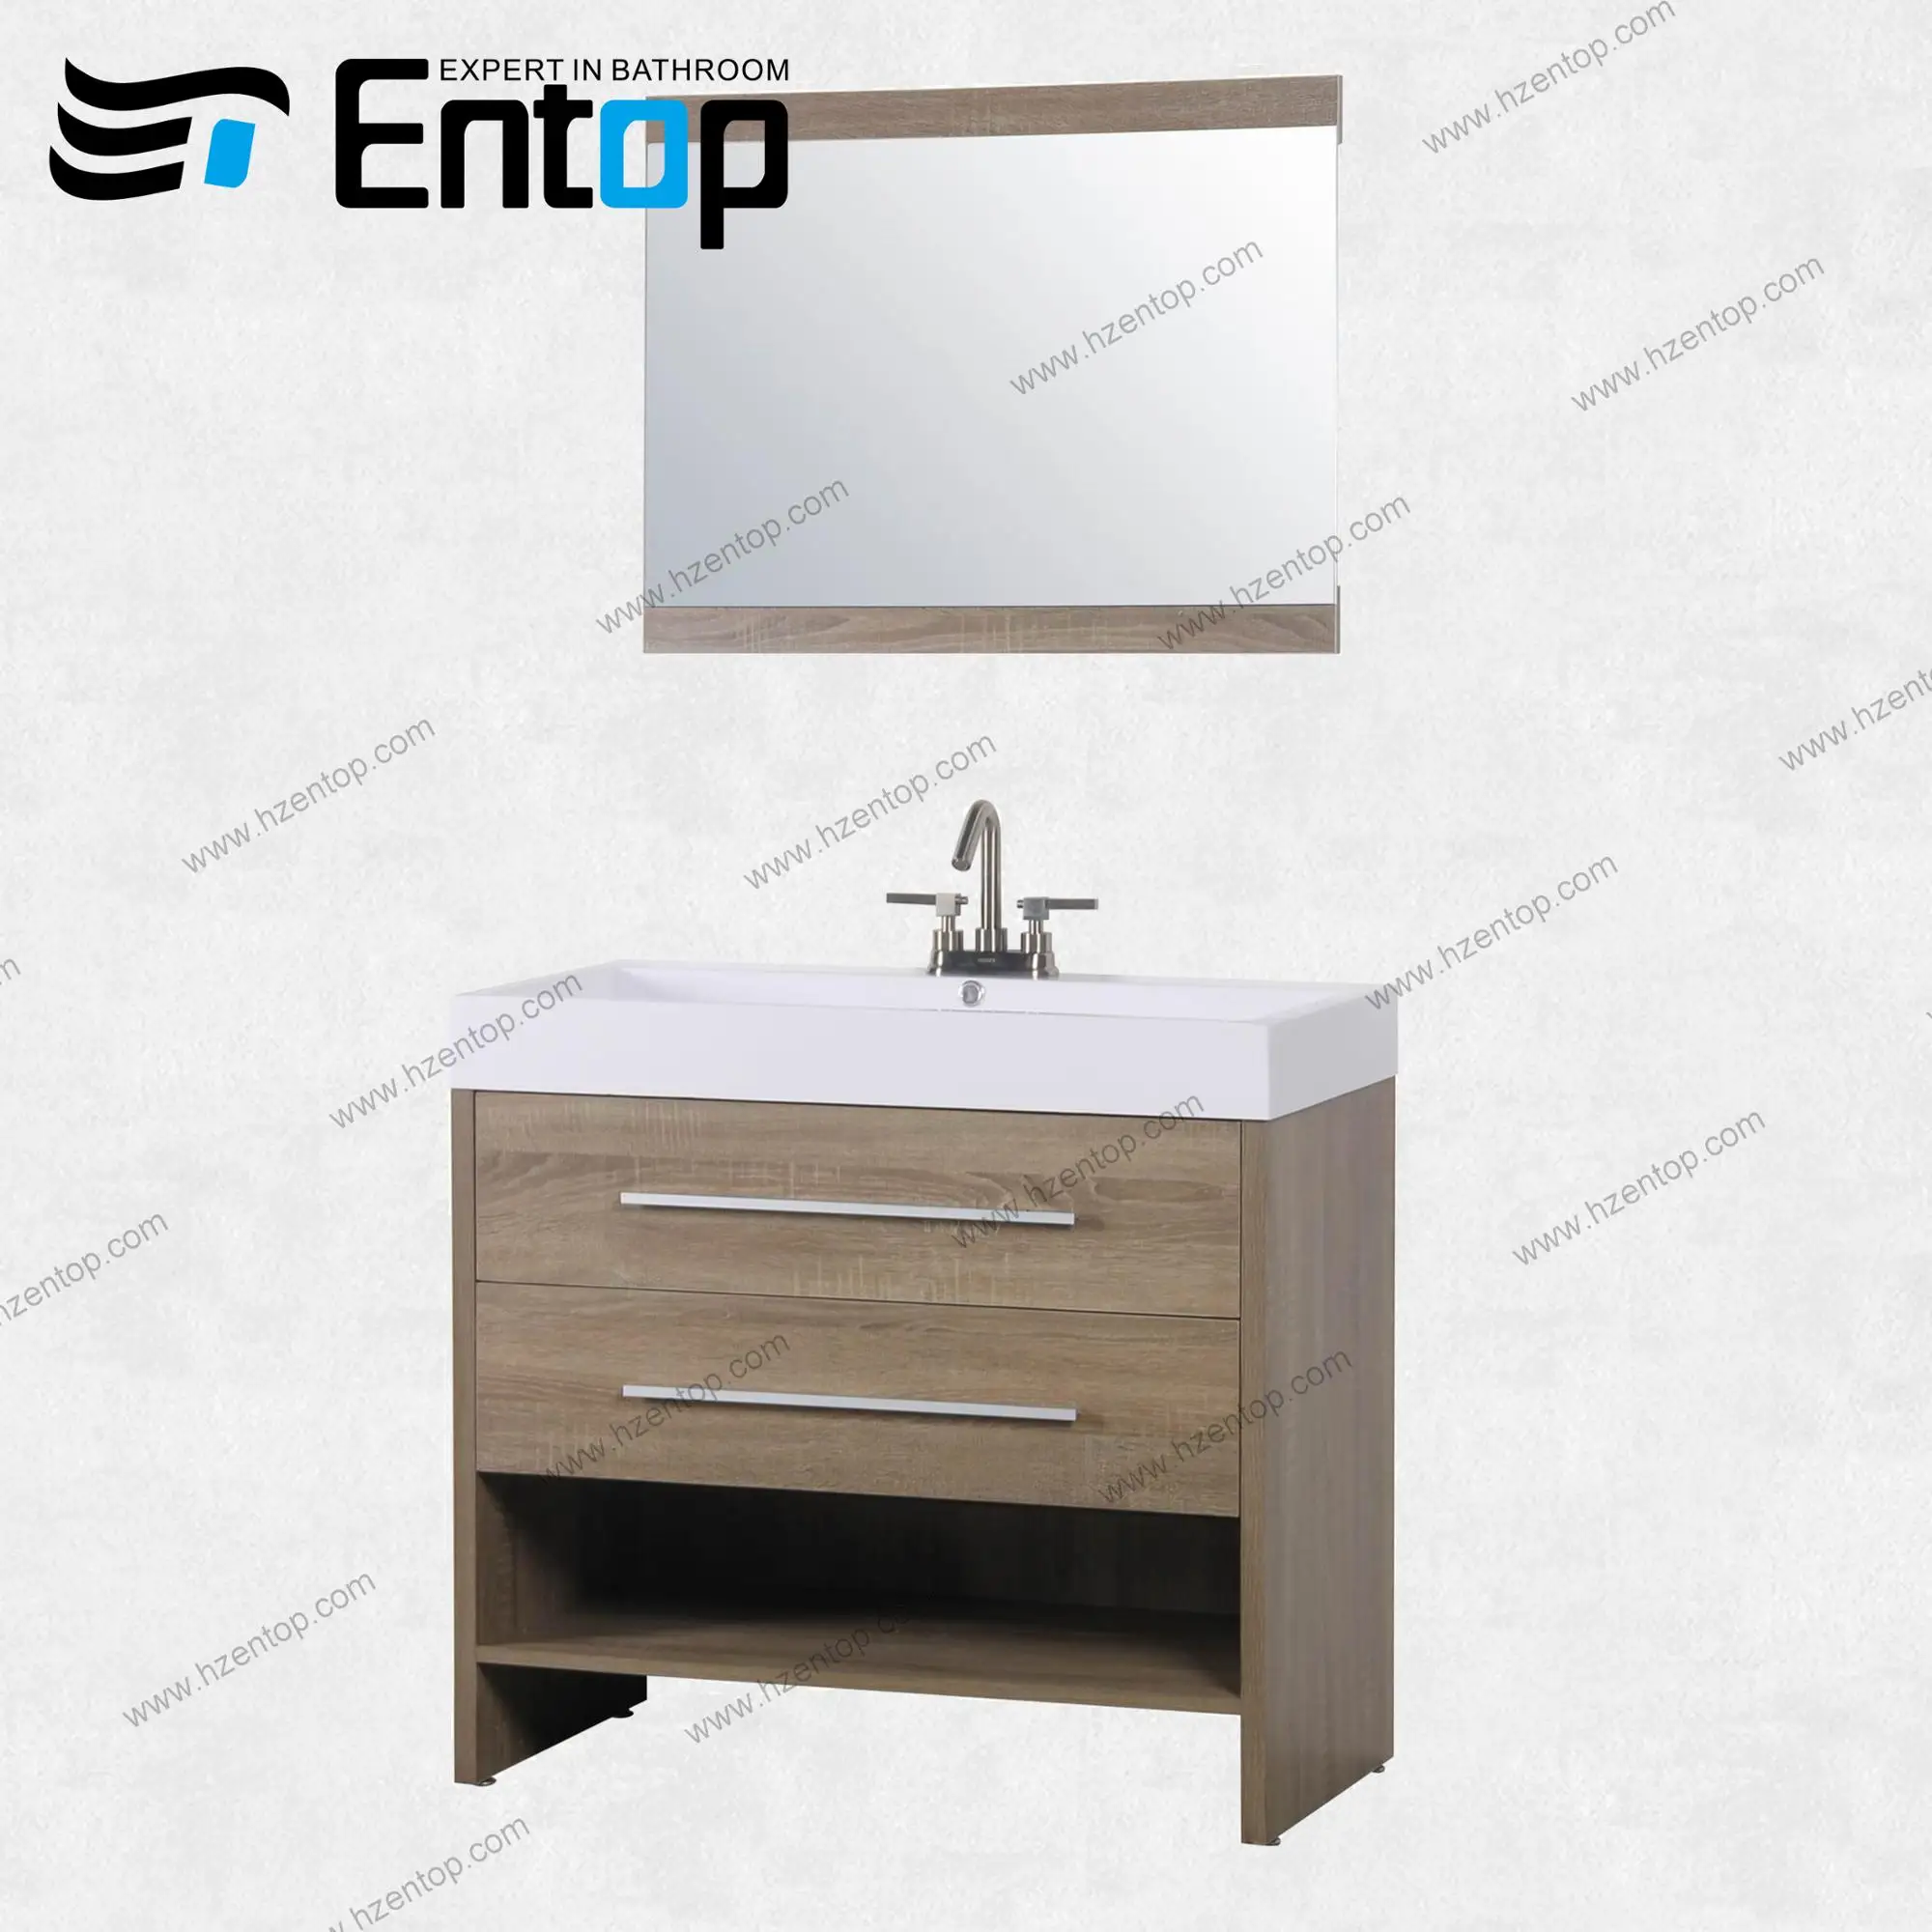 Entop Original Wood Color European Style Bathroom Vanity Cabinet